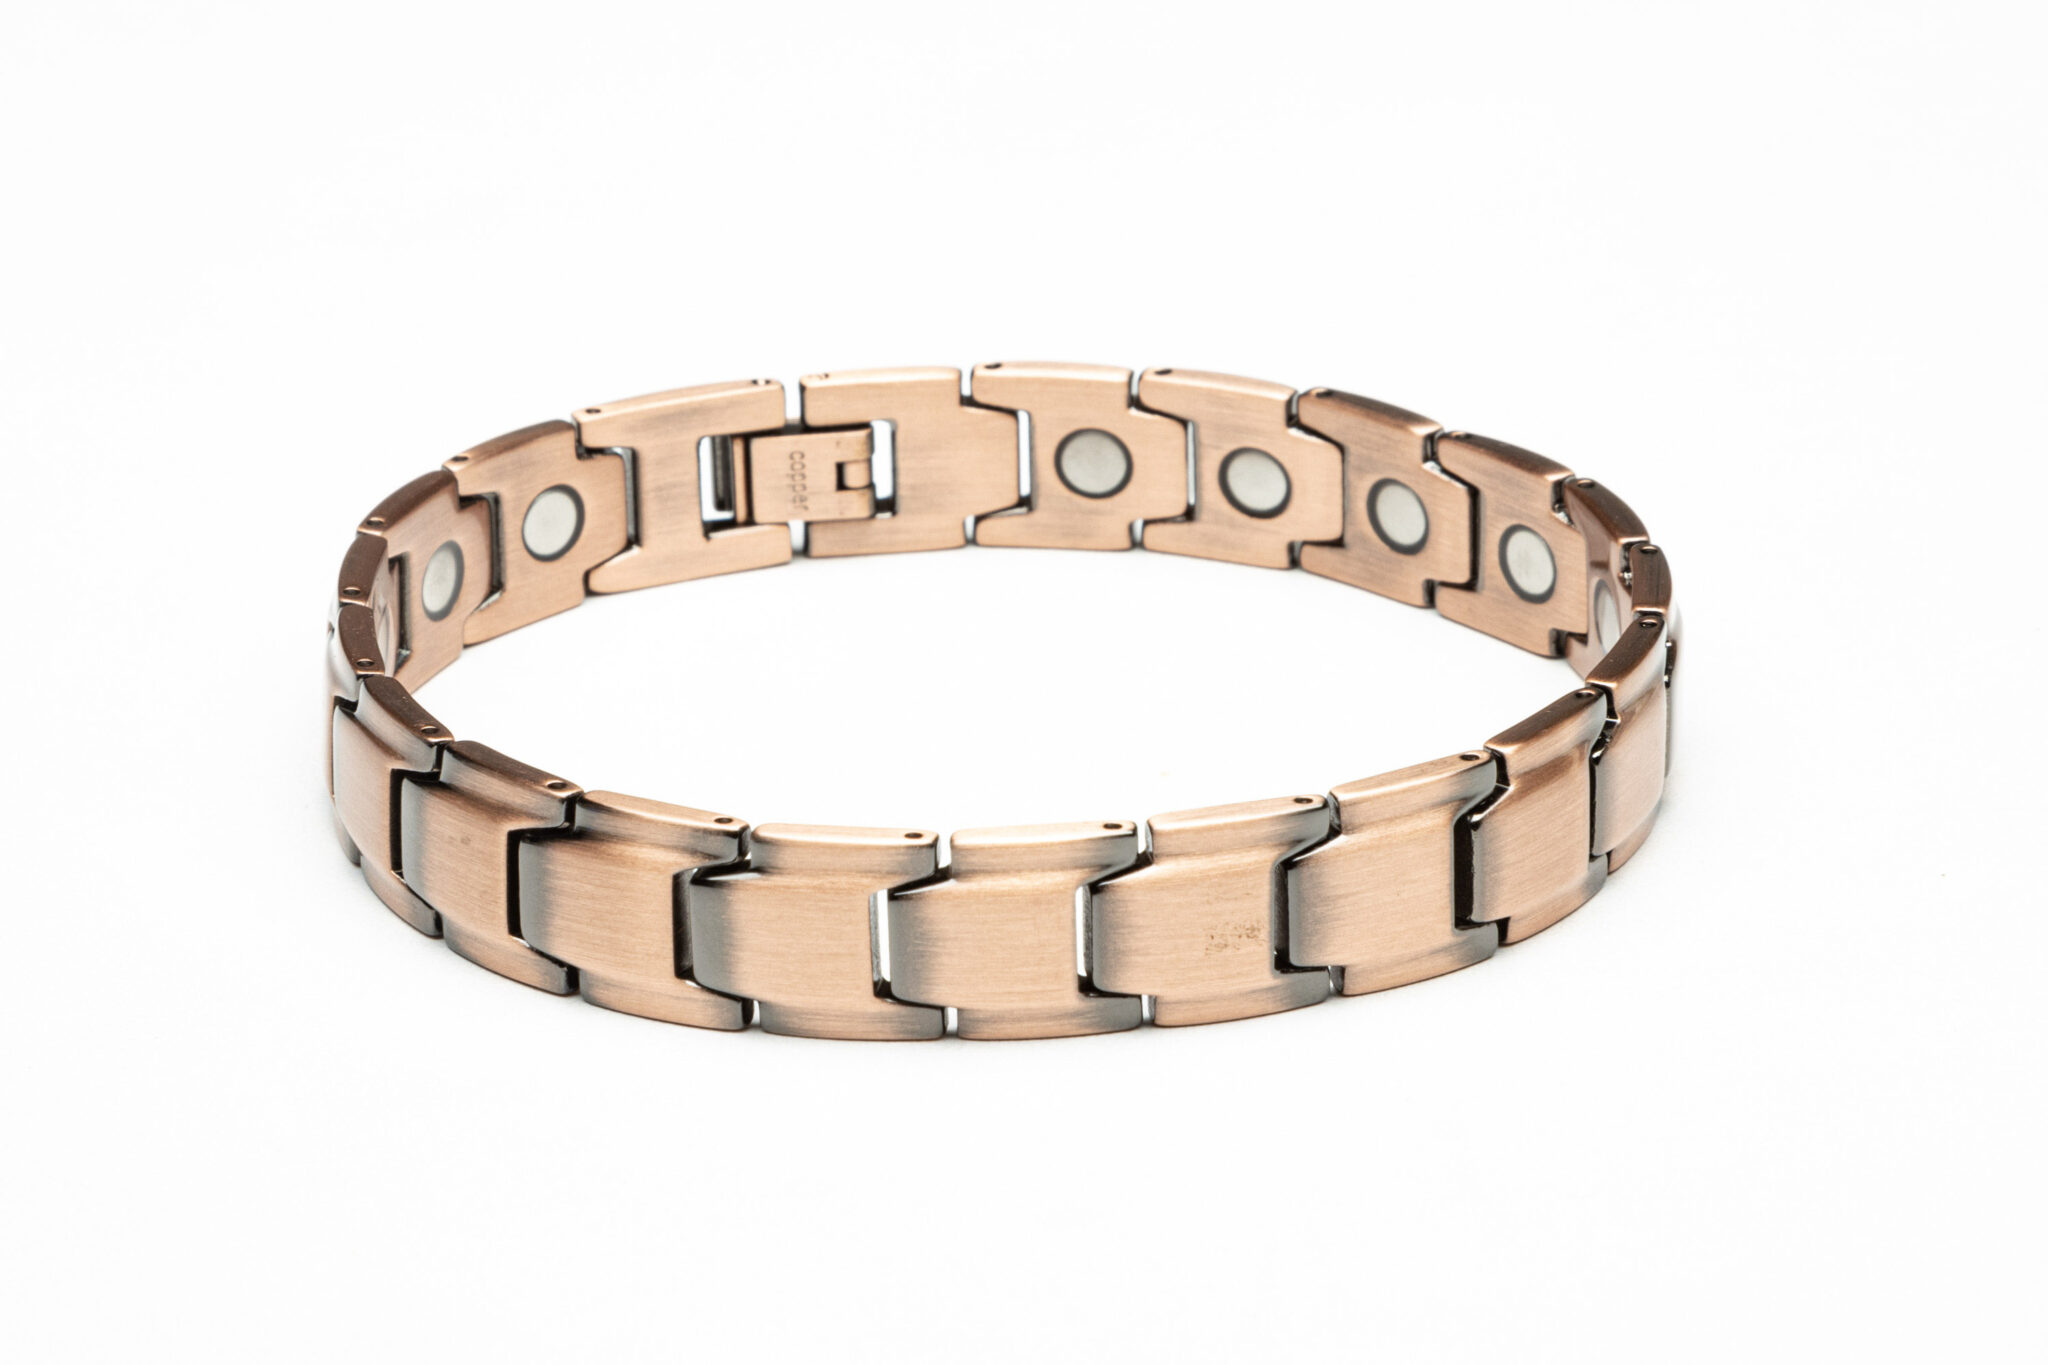 Pure Copper Magnetic Bracelet